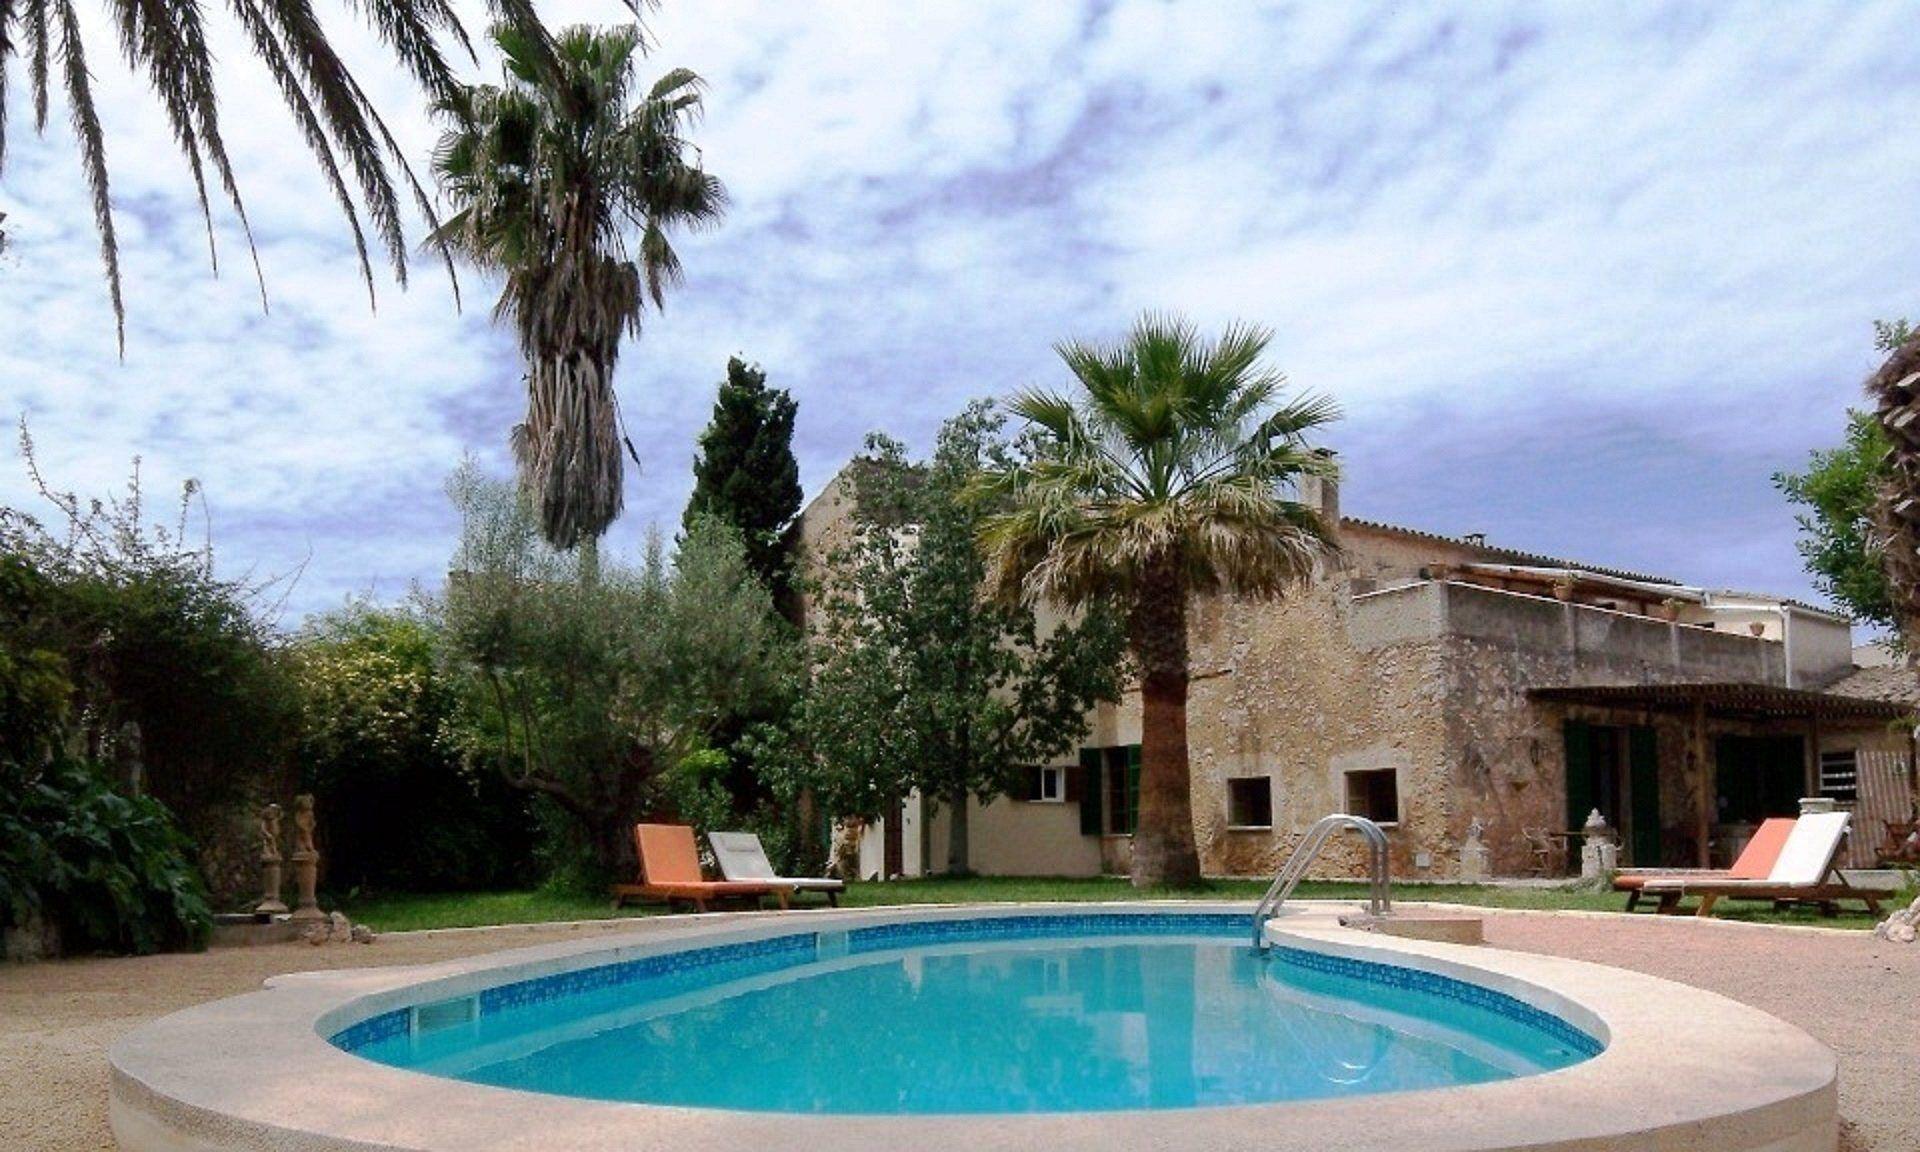 2 Zimmer Gartenwohnung mit Terrasse im Herrenhaus Ferienwohnung in Spanien